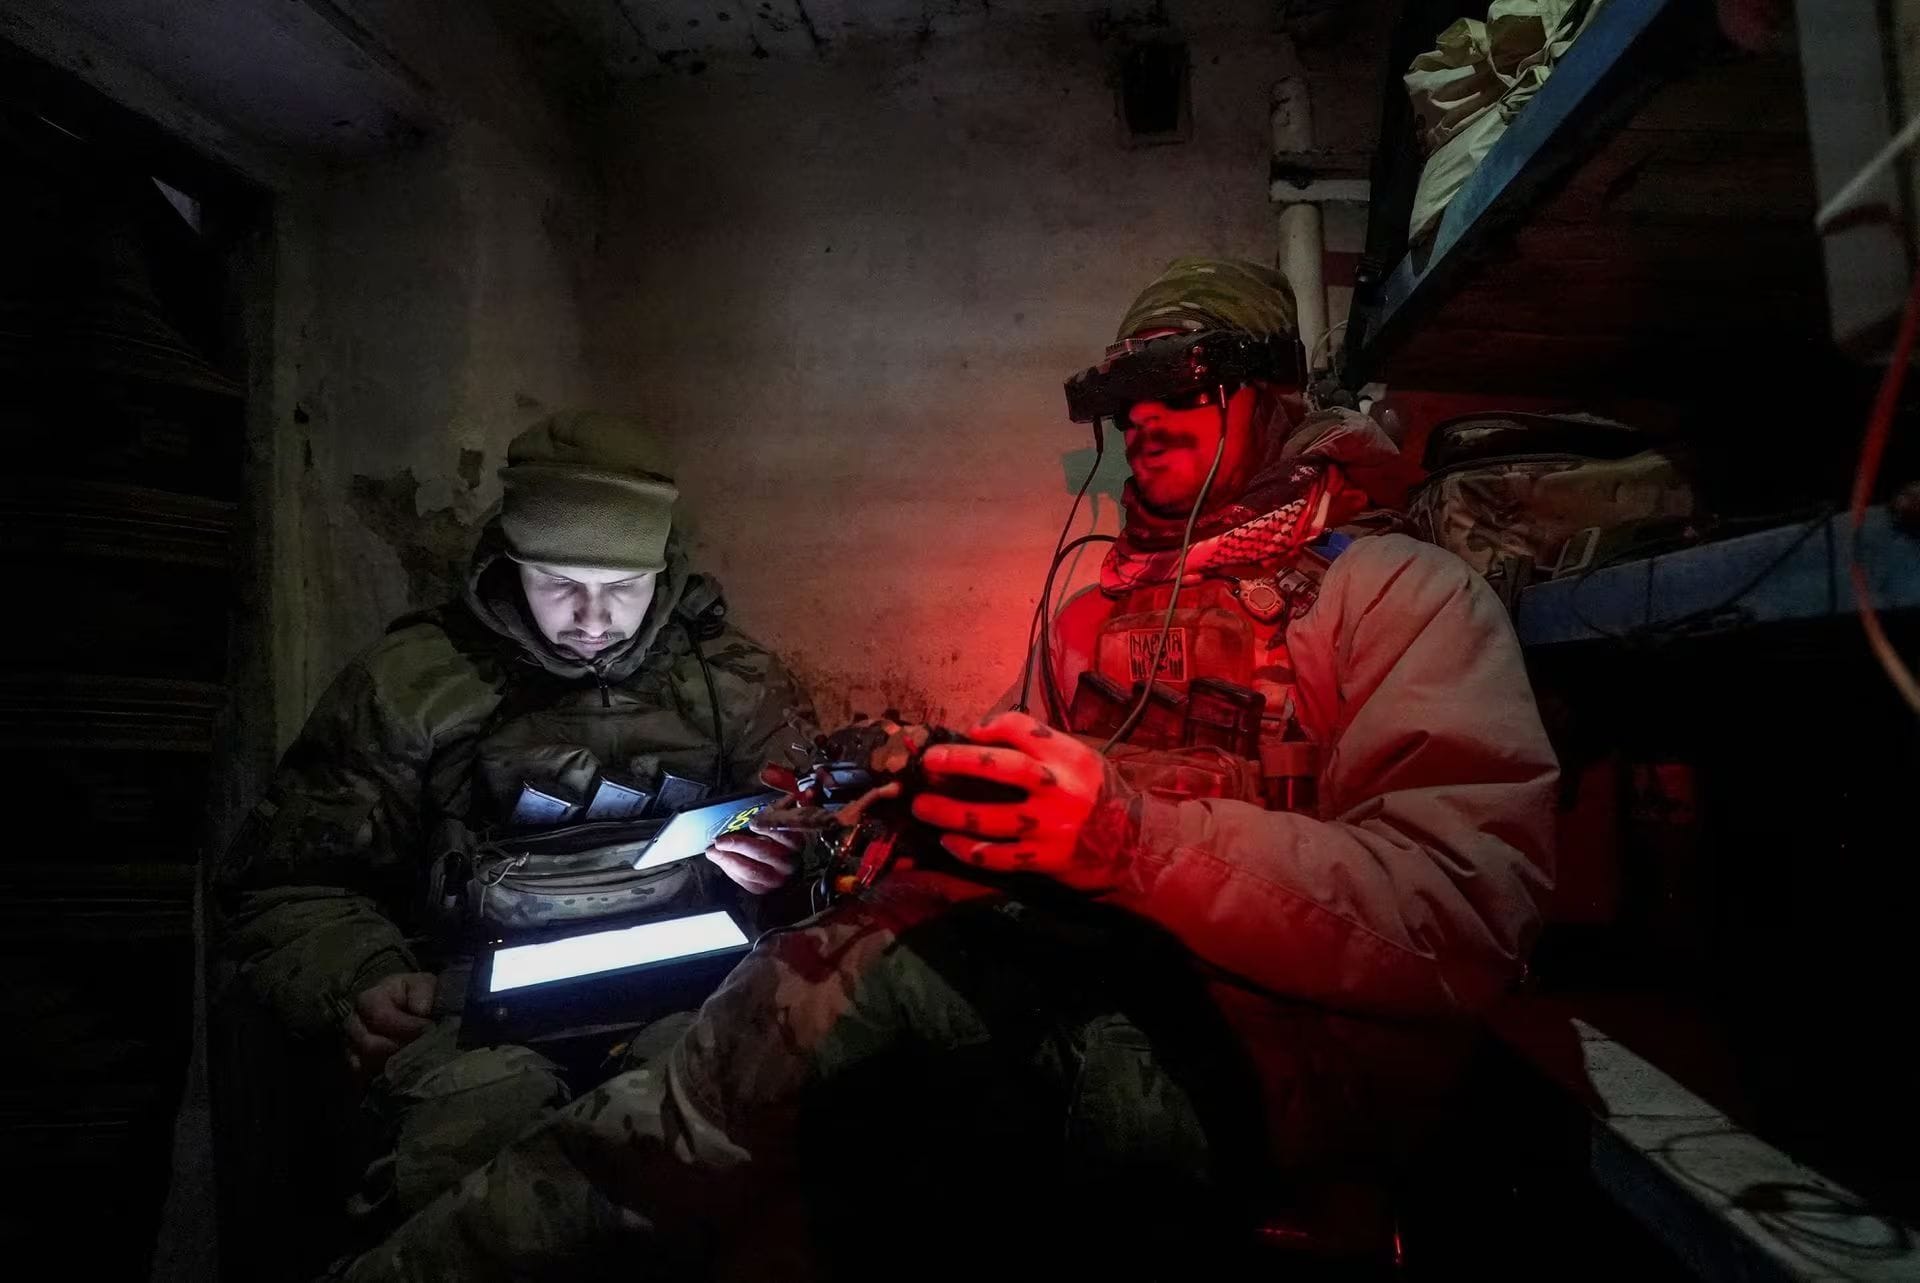 Ukrainische Soldaten steuern eine Drohne in der Region Donezk.